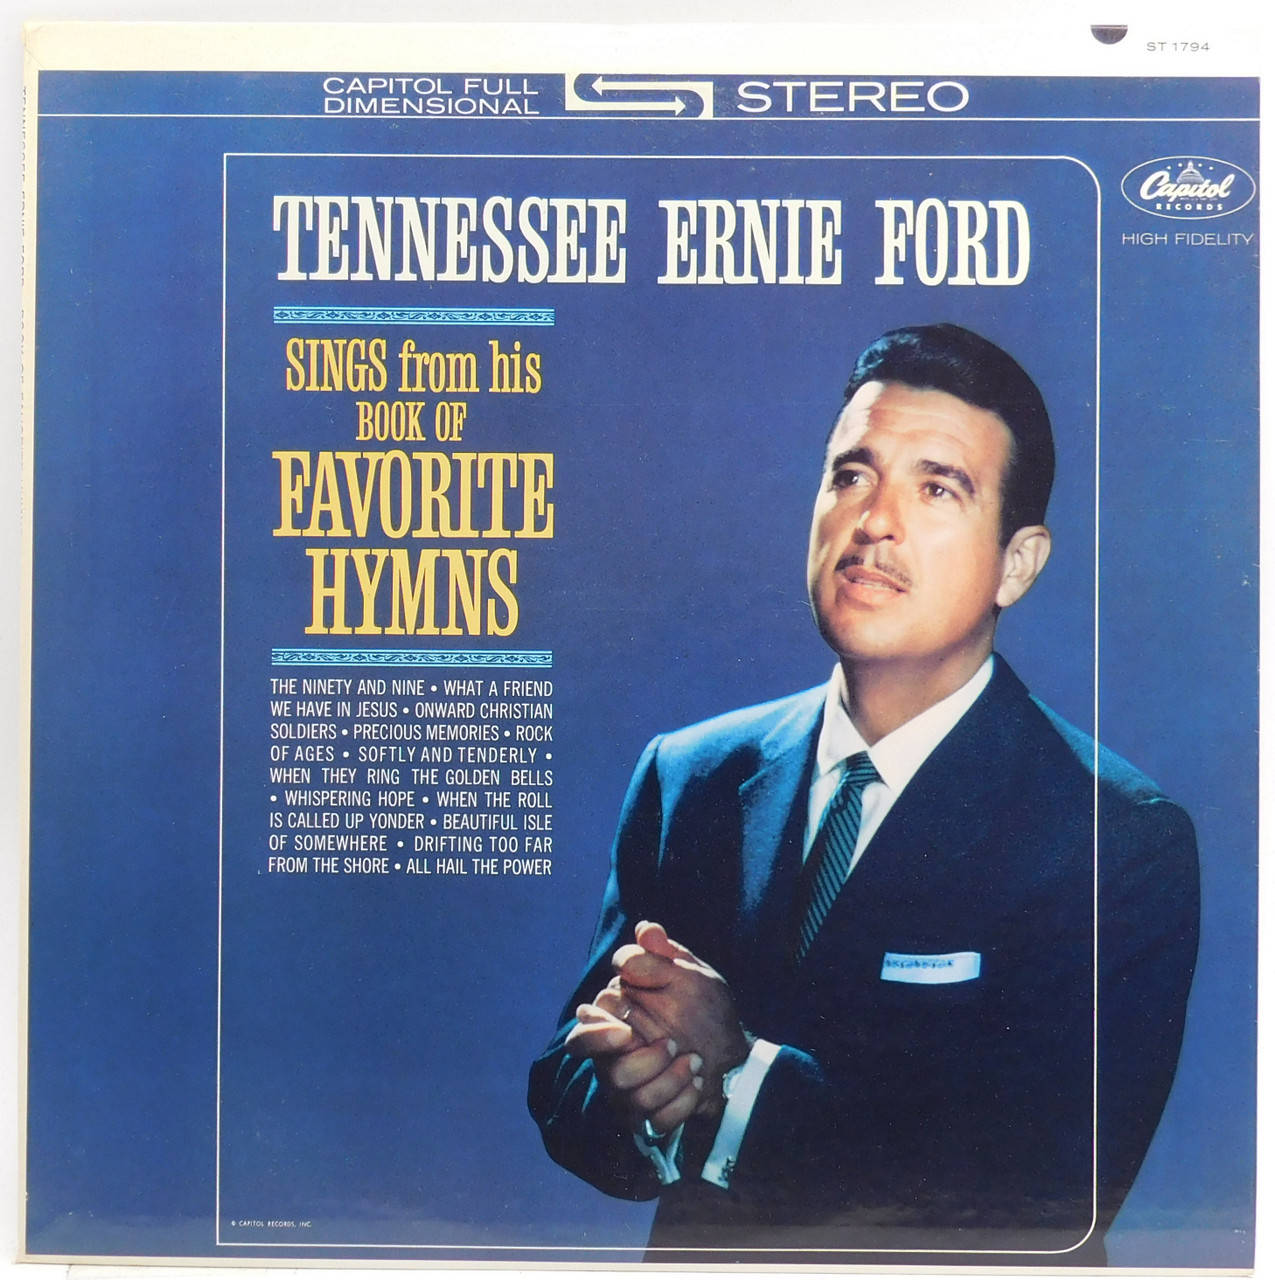 Tennessee Ernie Ford Yndlingssalme Vinyl Cover Tapet Wallpaper